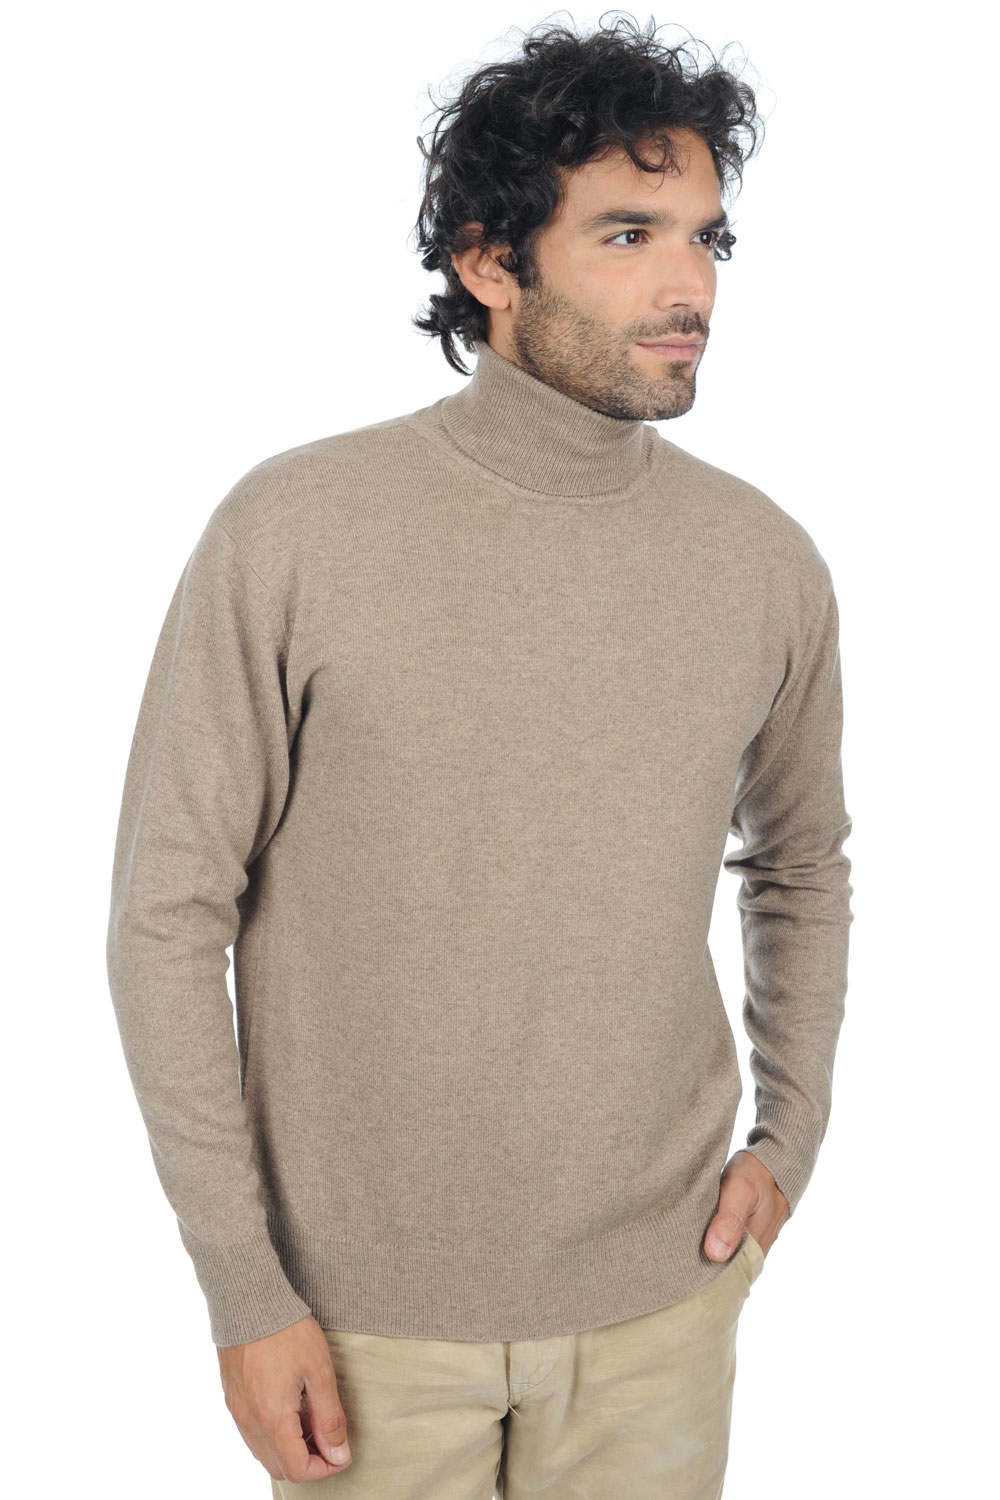 Cashmere men premium sweaters edgar premium dolma natural 4xl